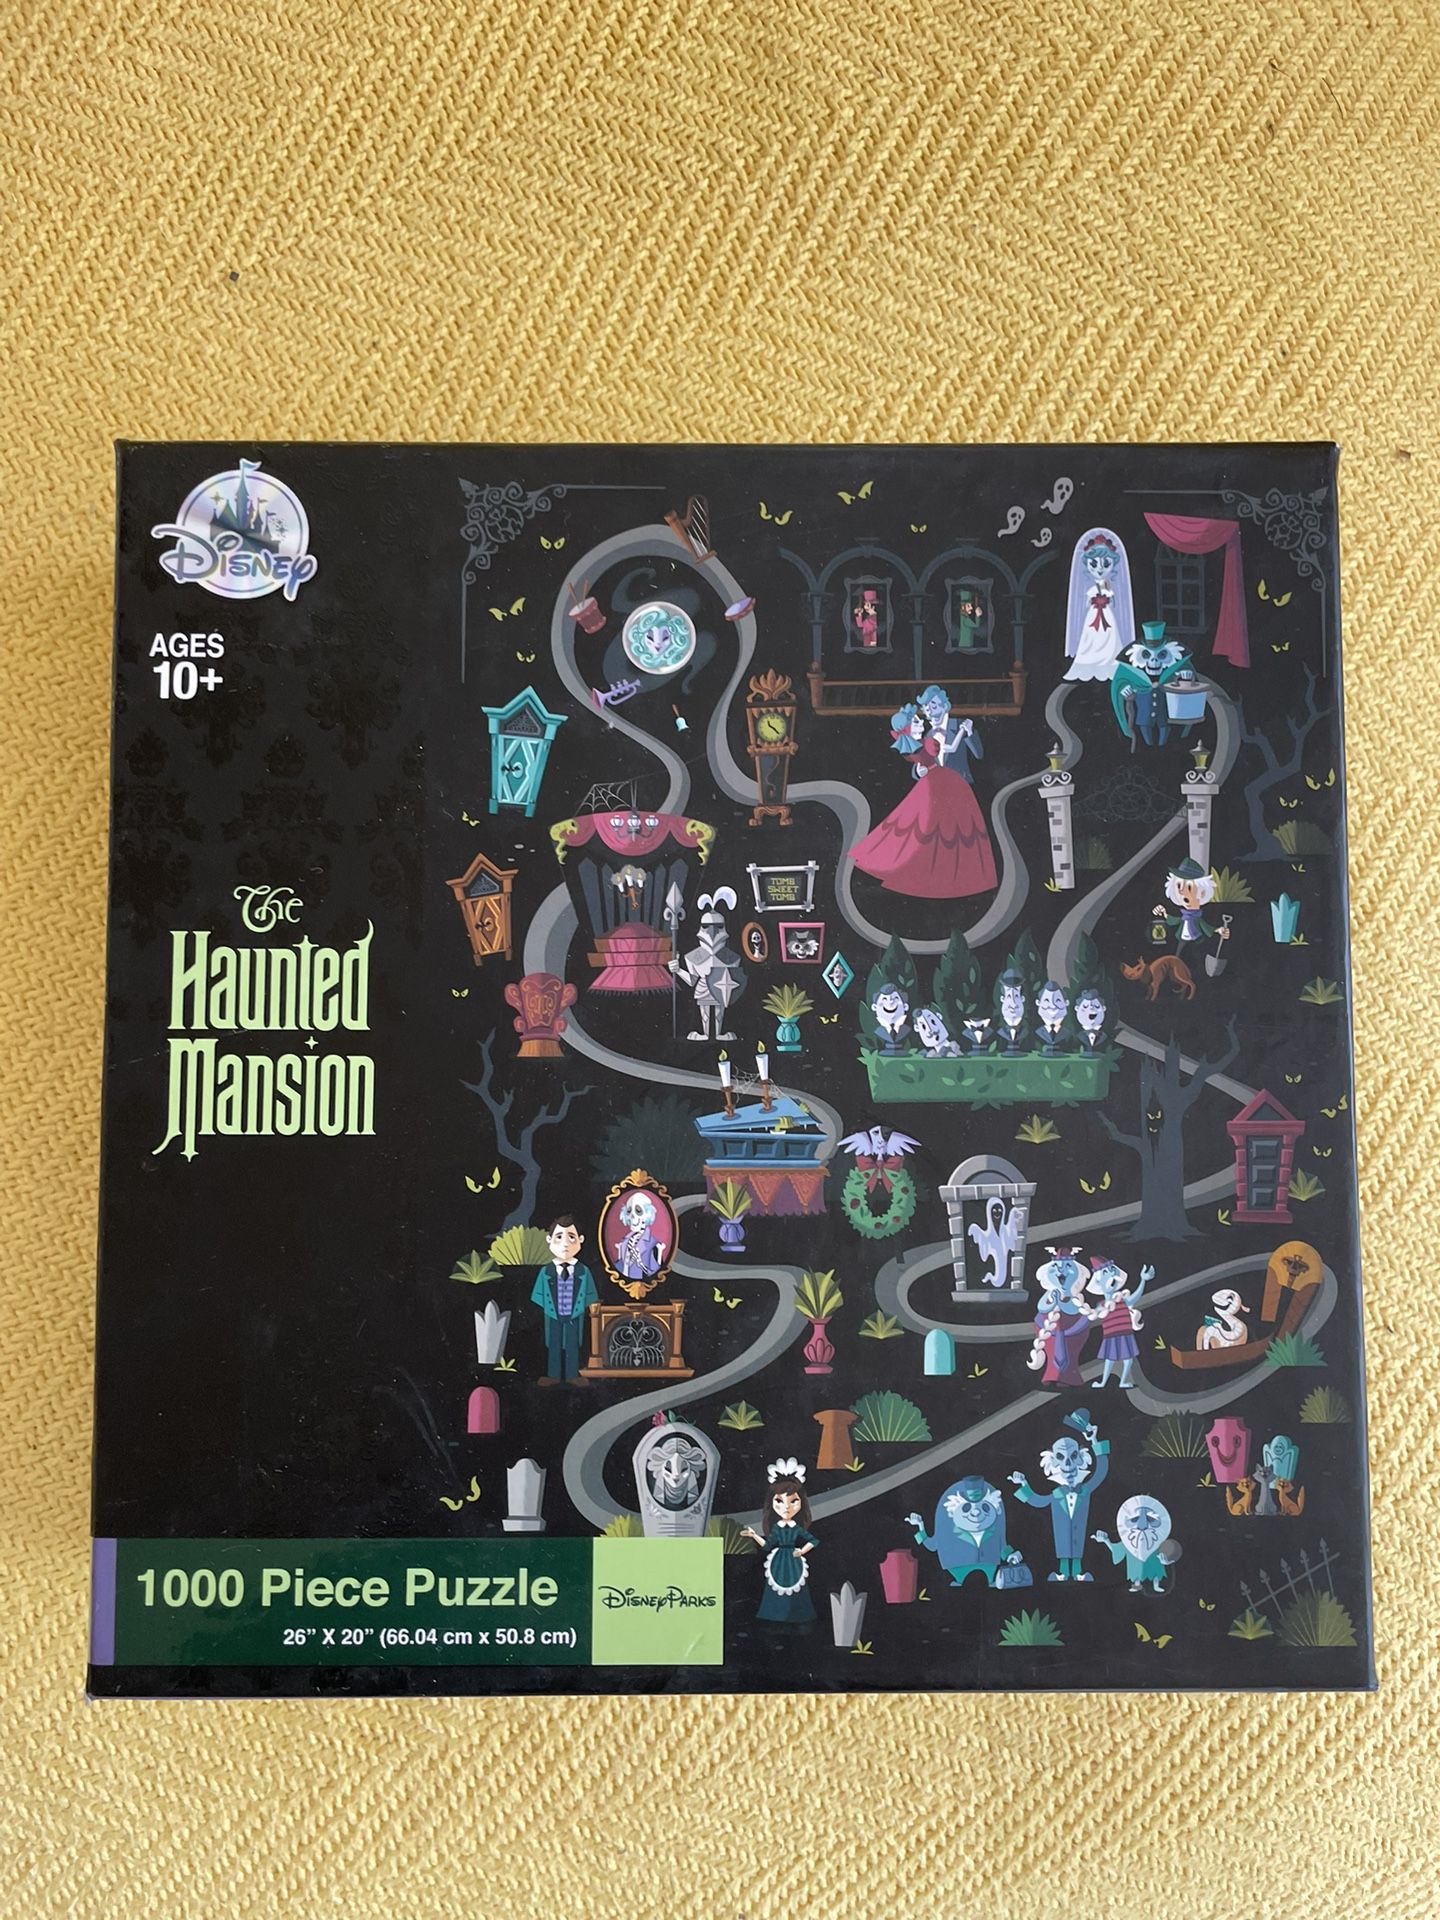 Haunted mansion Puzzle